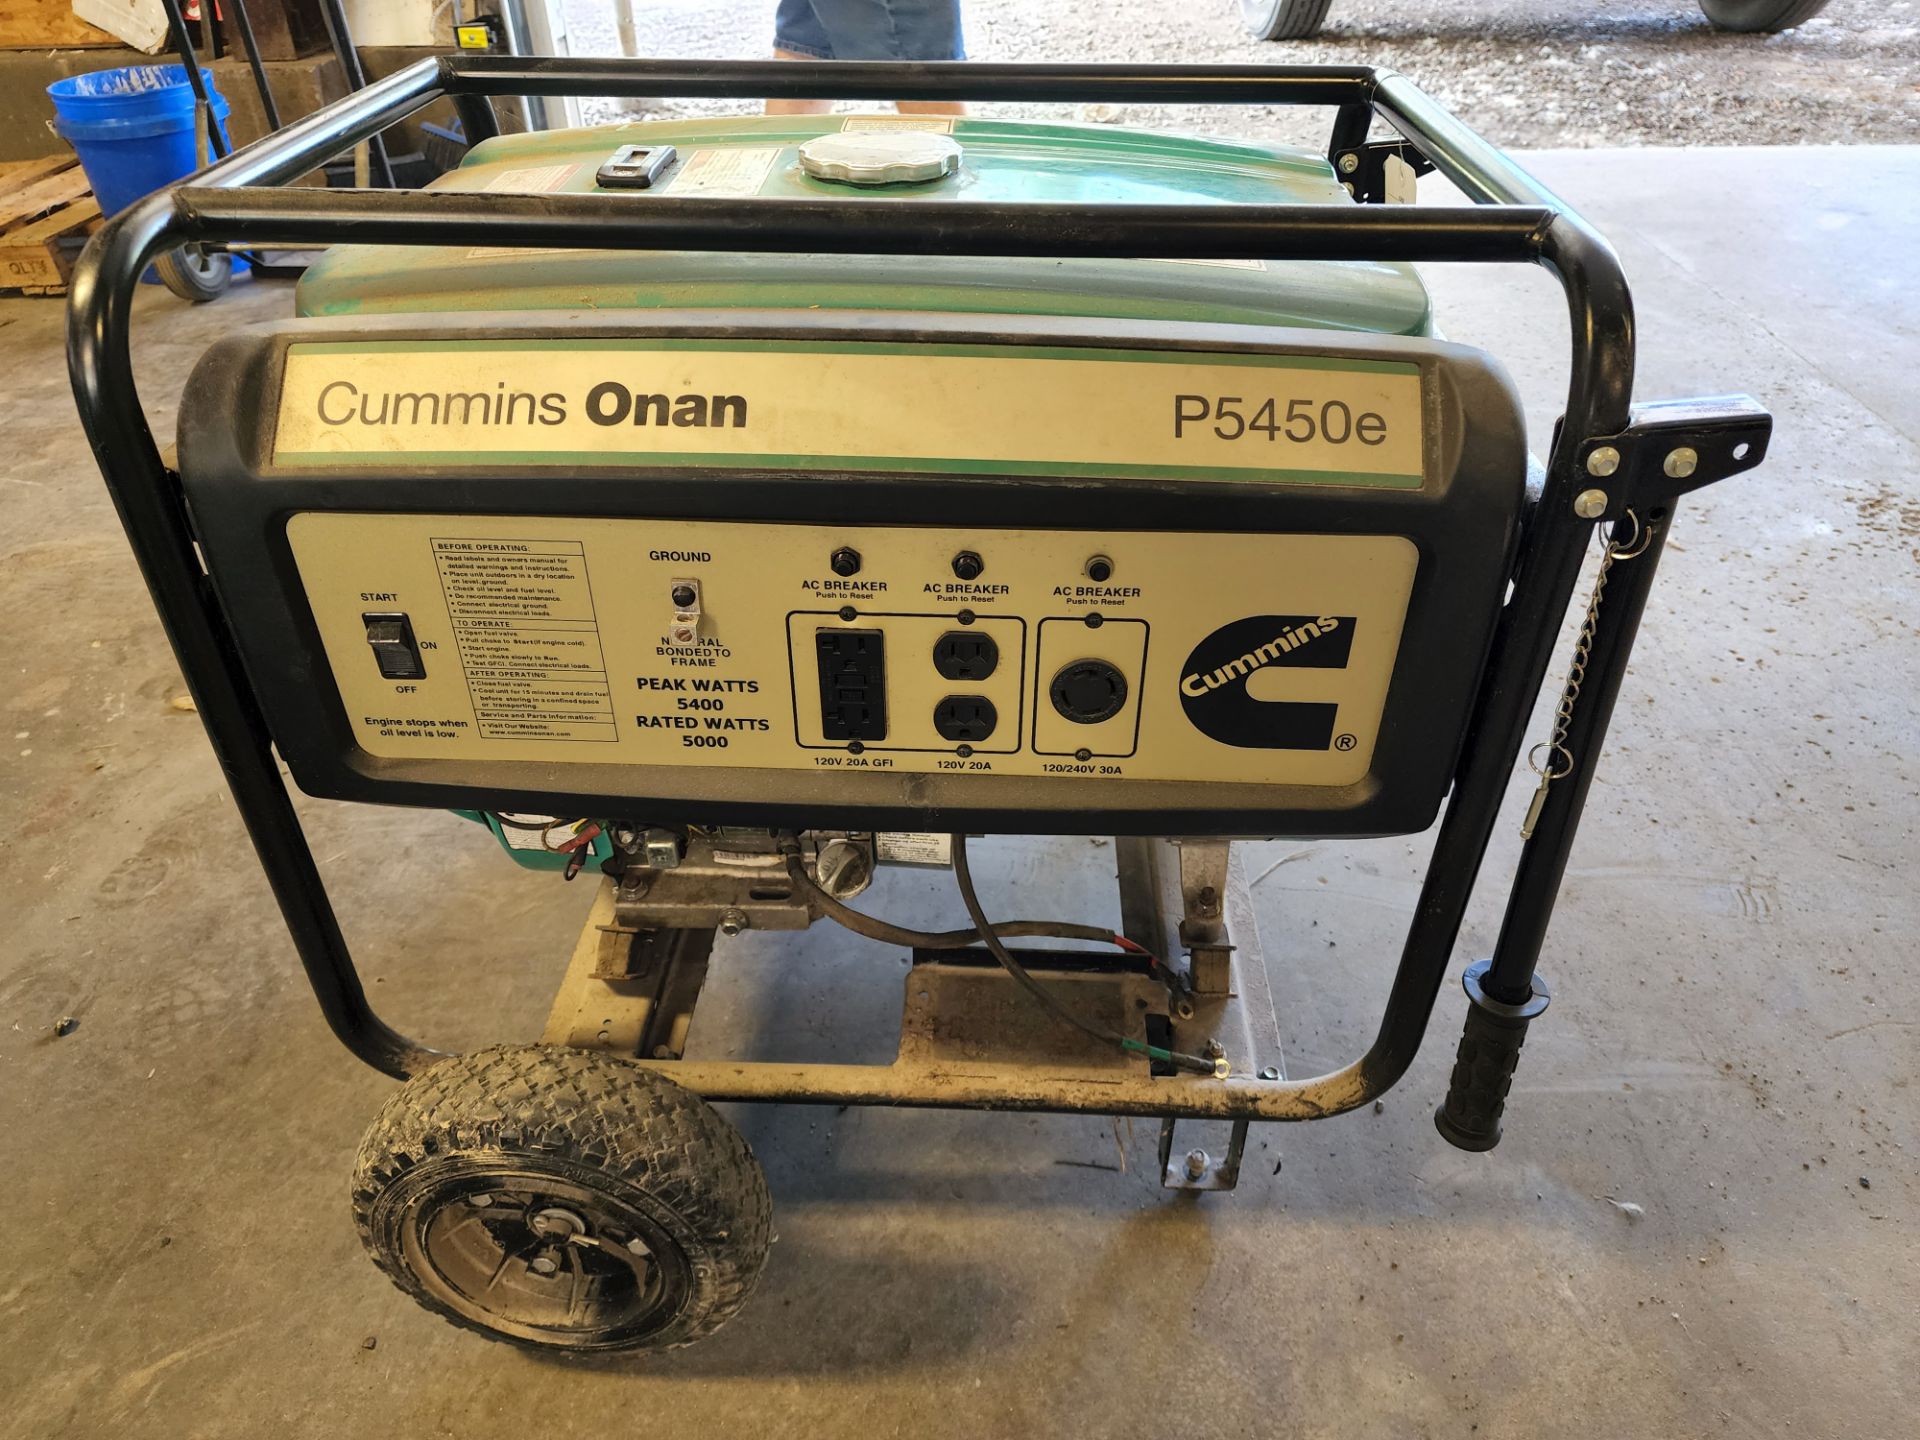 Cummins Onan Model P5450e Portable Generator